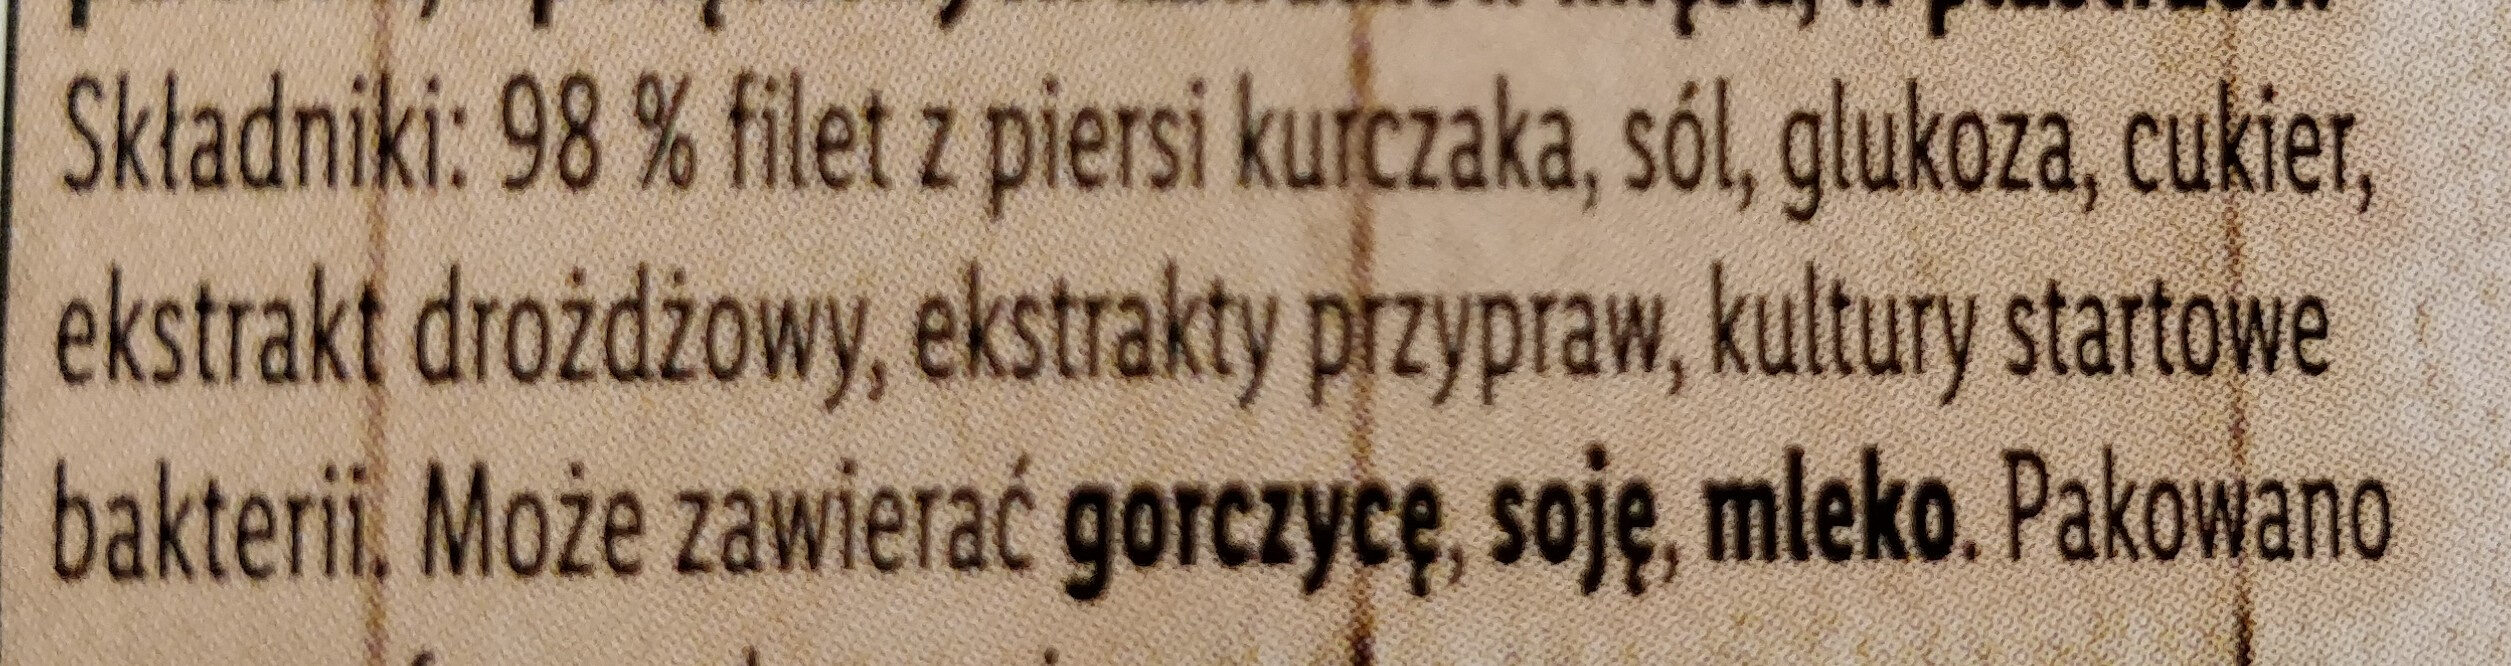 Piratki Filet z Kurczaka - Ingredients - pl